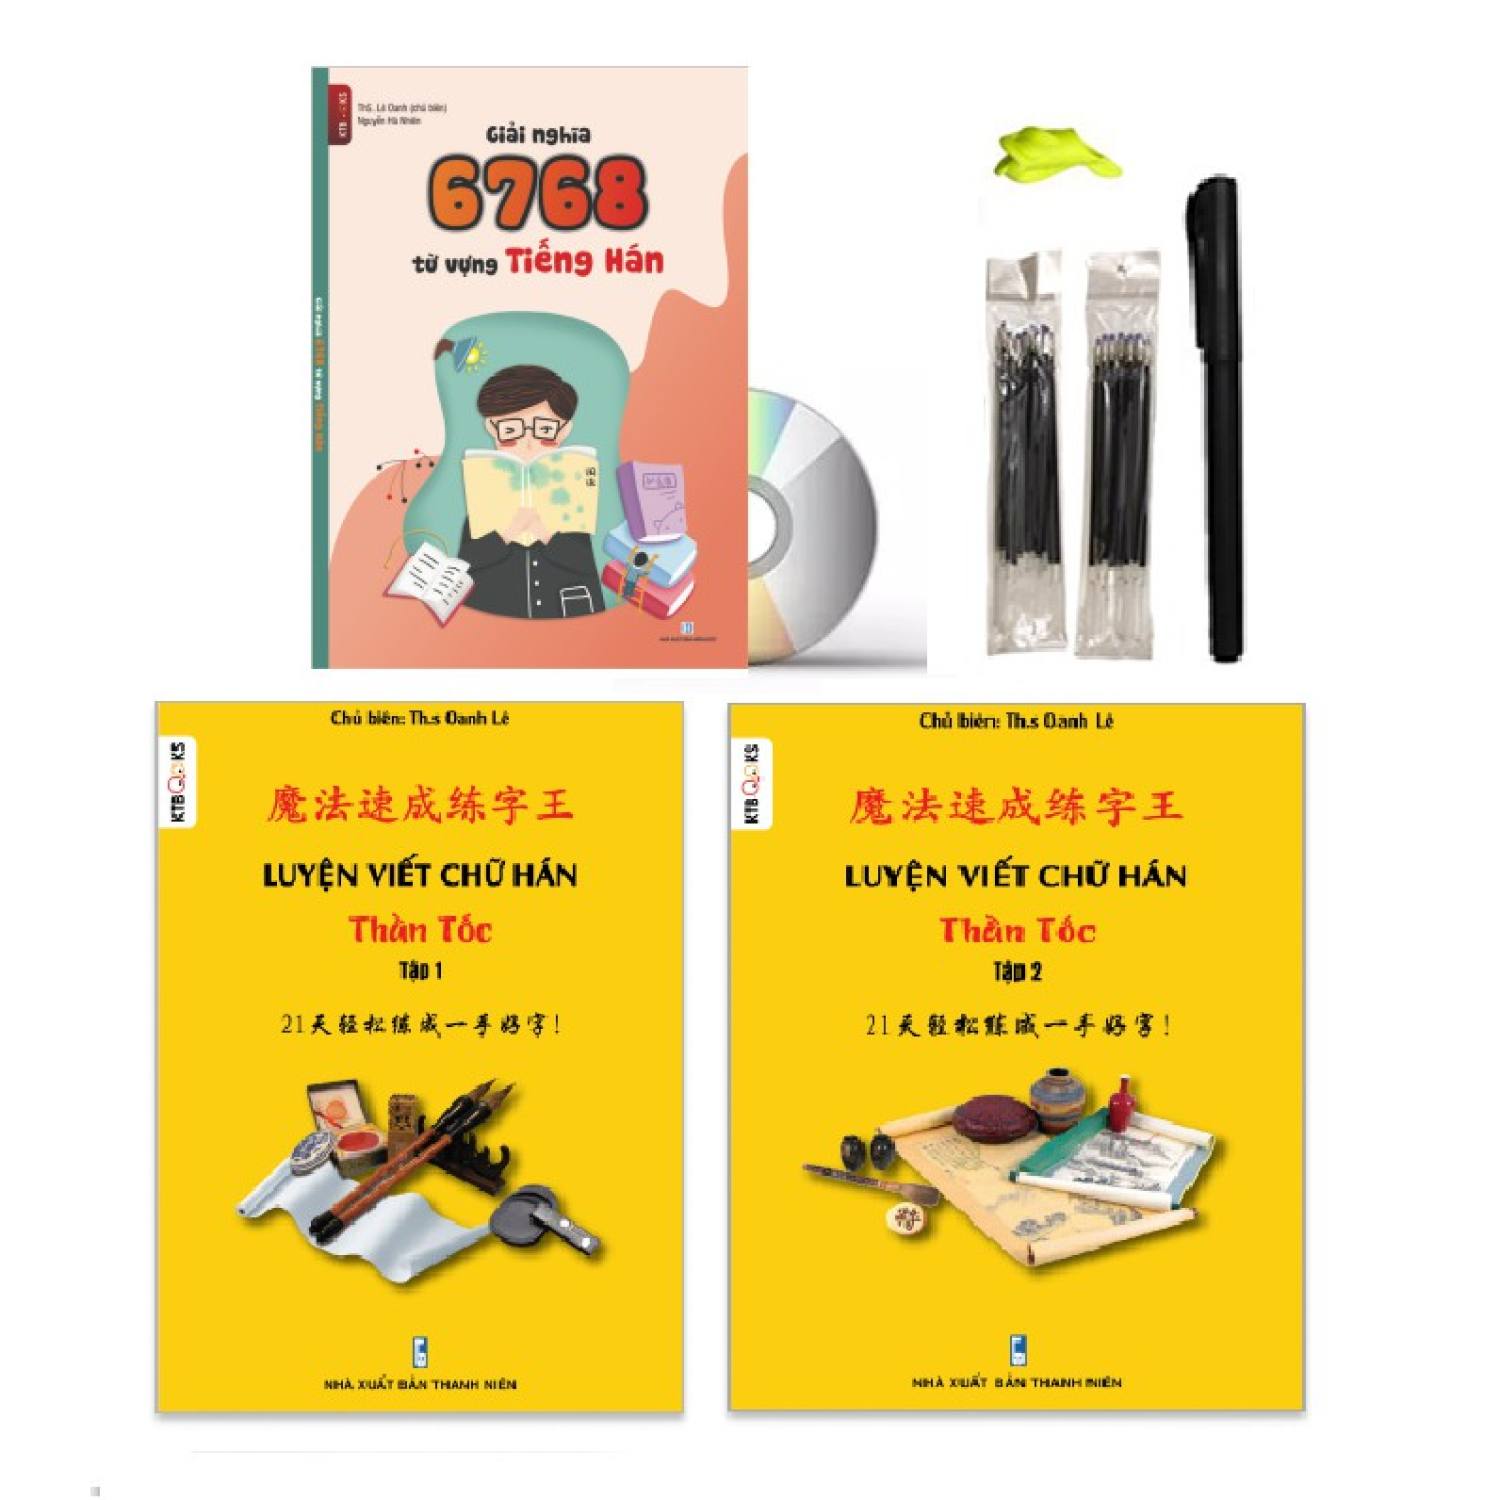 Sách – Combo: Bộ luyện viết chữ Hán thần tốc tập 1+2 Có audio nghe + Giải nghĩa 6768 từ vựng tiếng Hán +DVD tài liệu